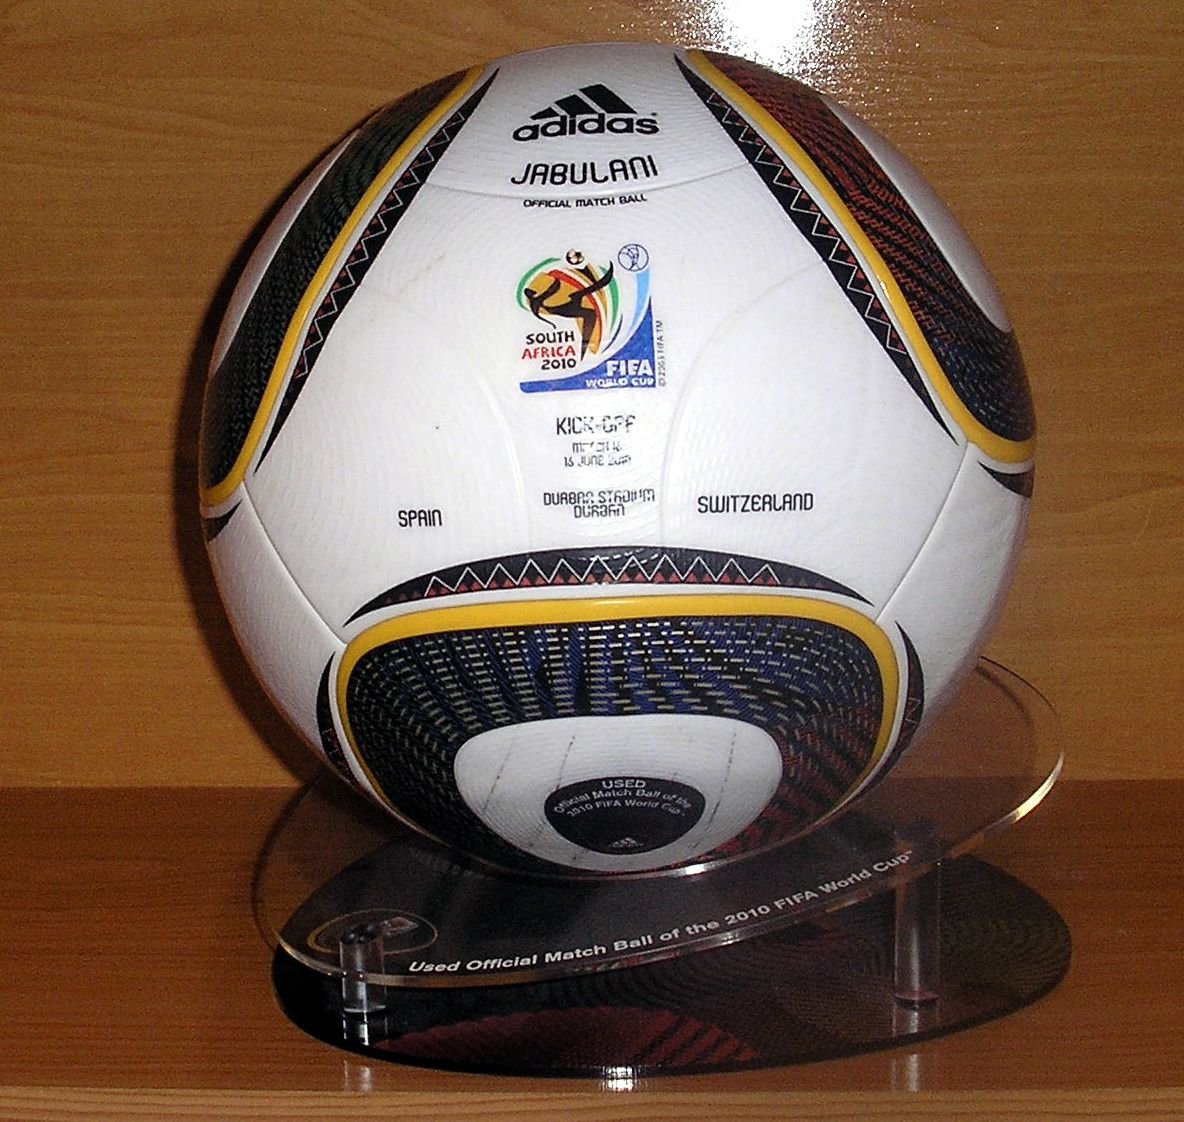 Adidas Jabulani Match Ball Replica 2010